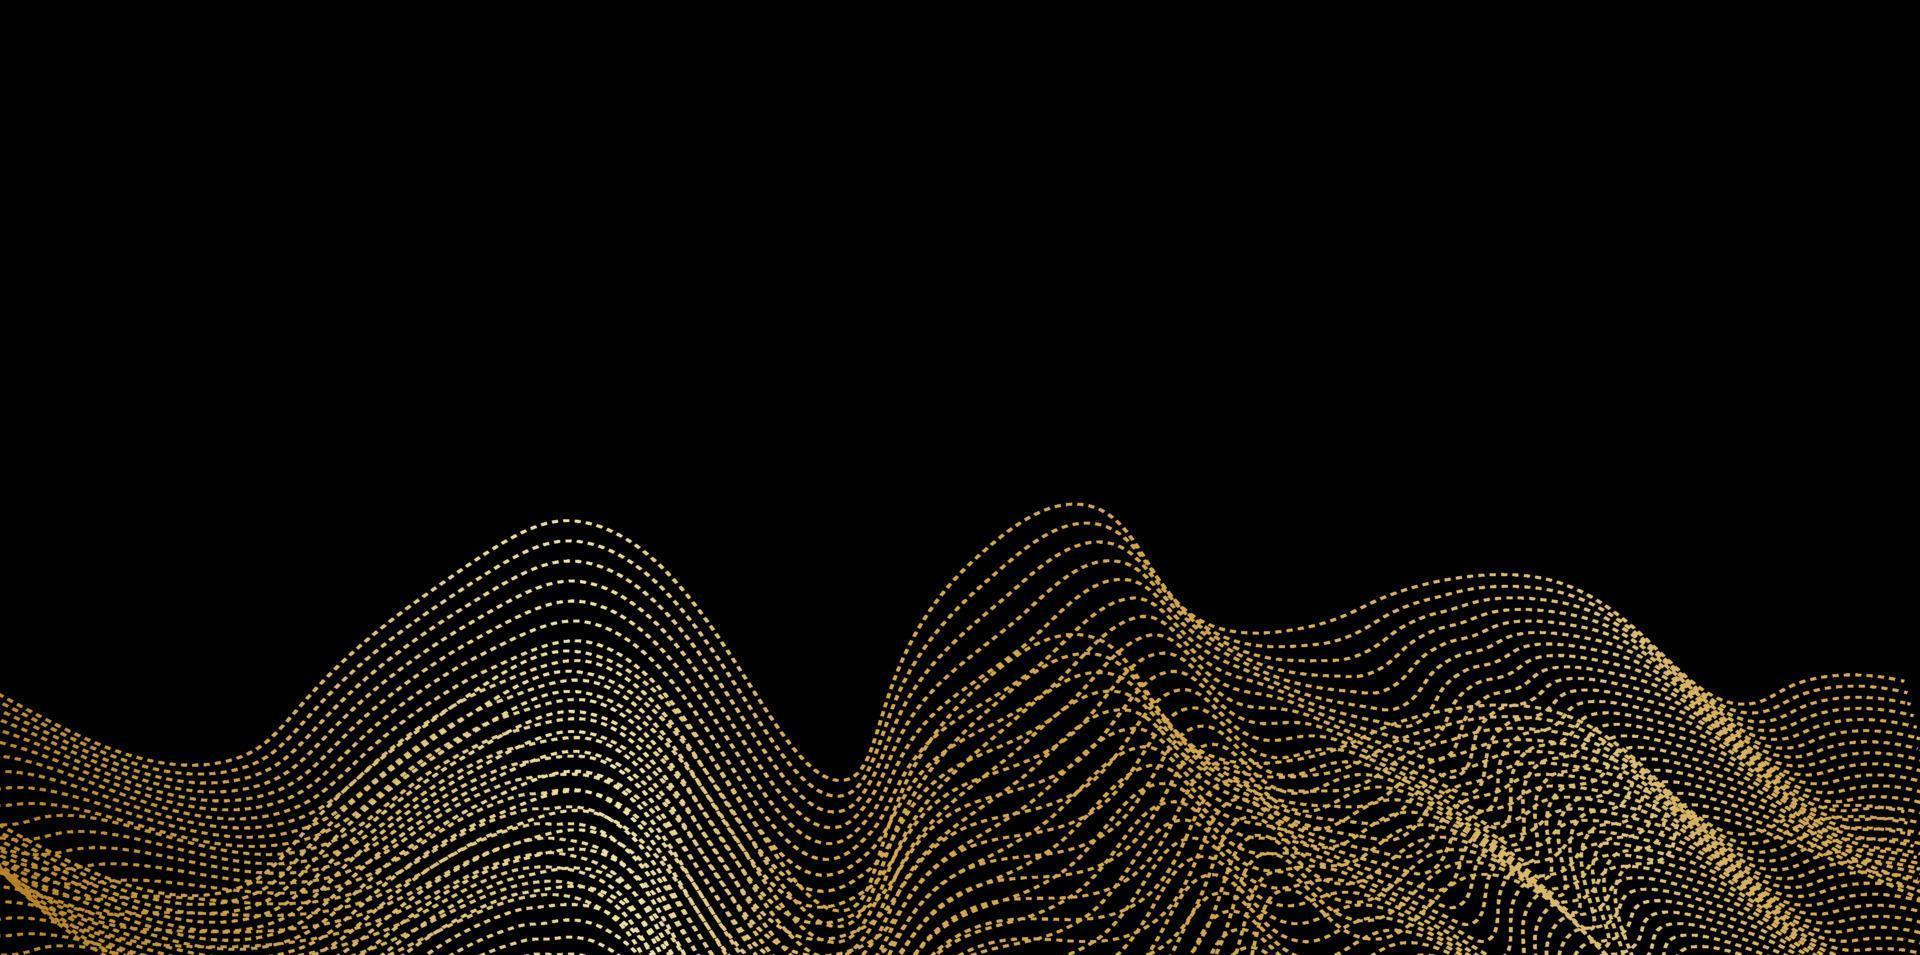 Ecualizador de onda de sonido digital con efecto monocromático dorado, tecnología y concepto de onda sísmica, diseño de lujo dorado para la industria de la música. ilustración vectorial vector